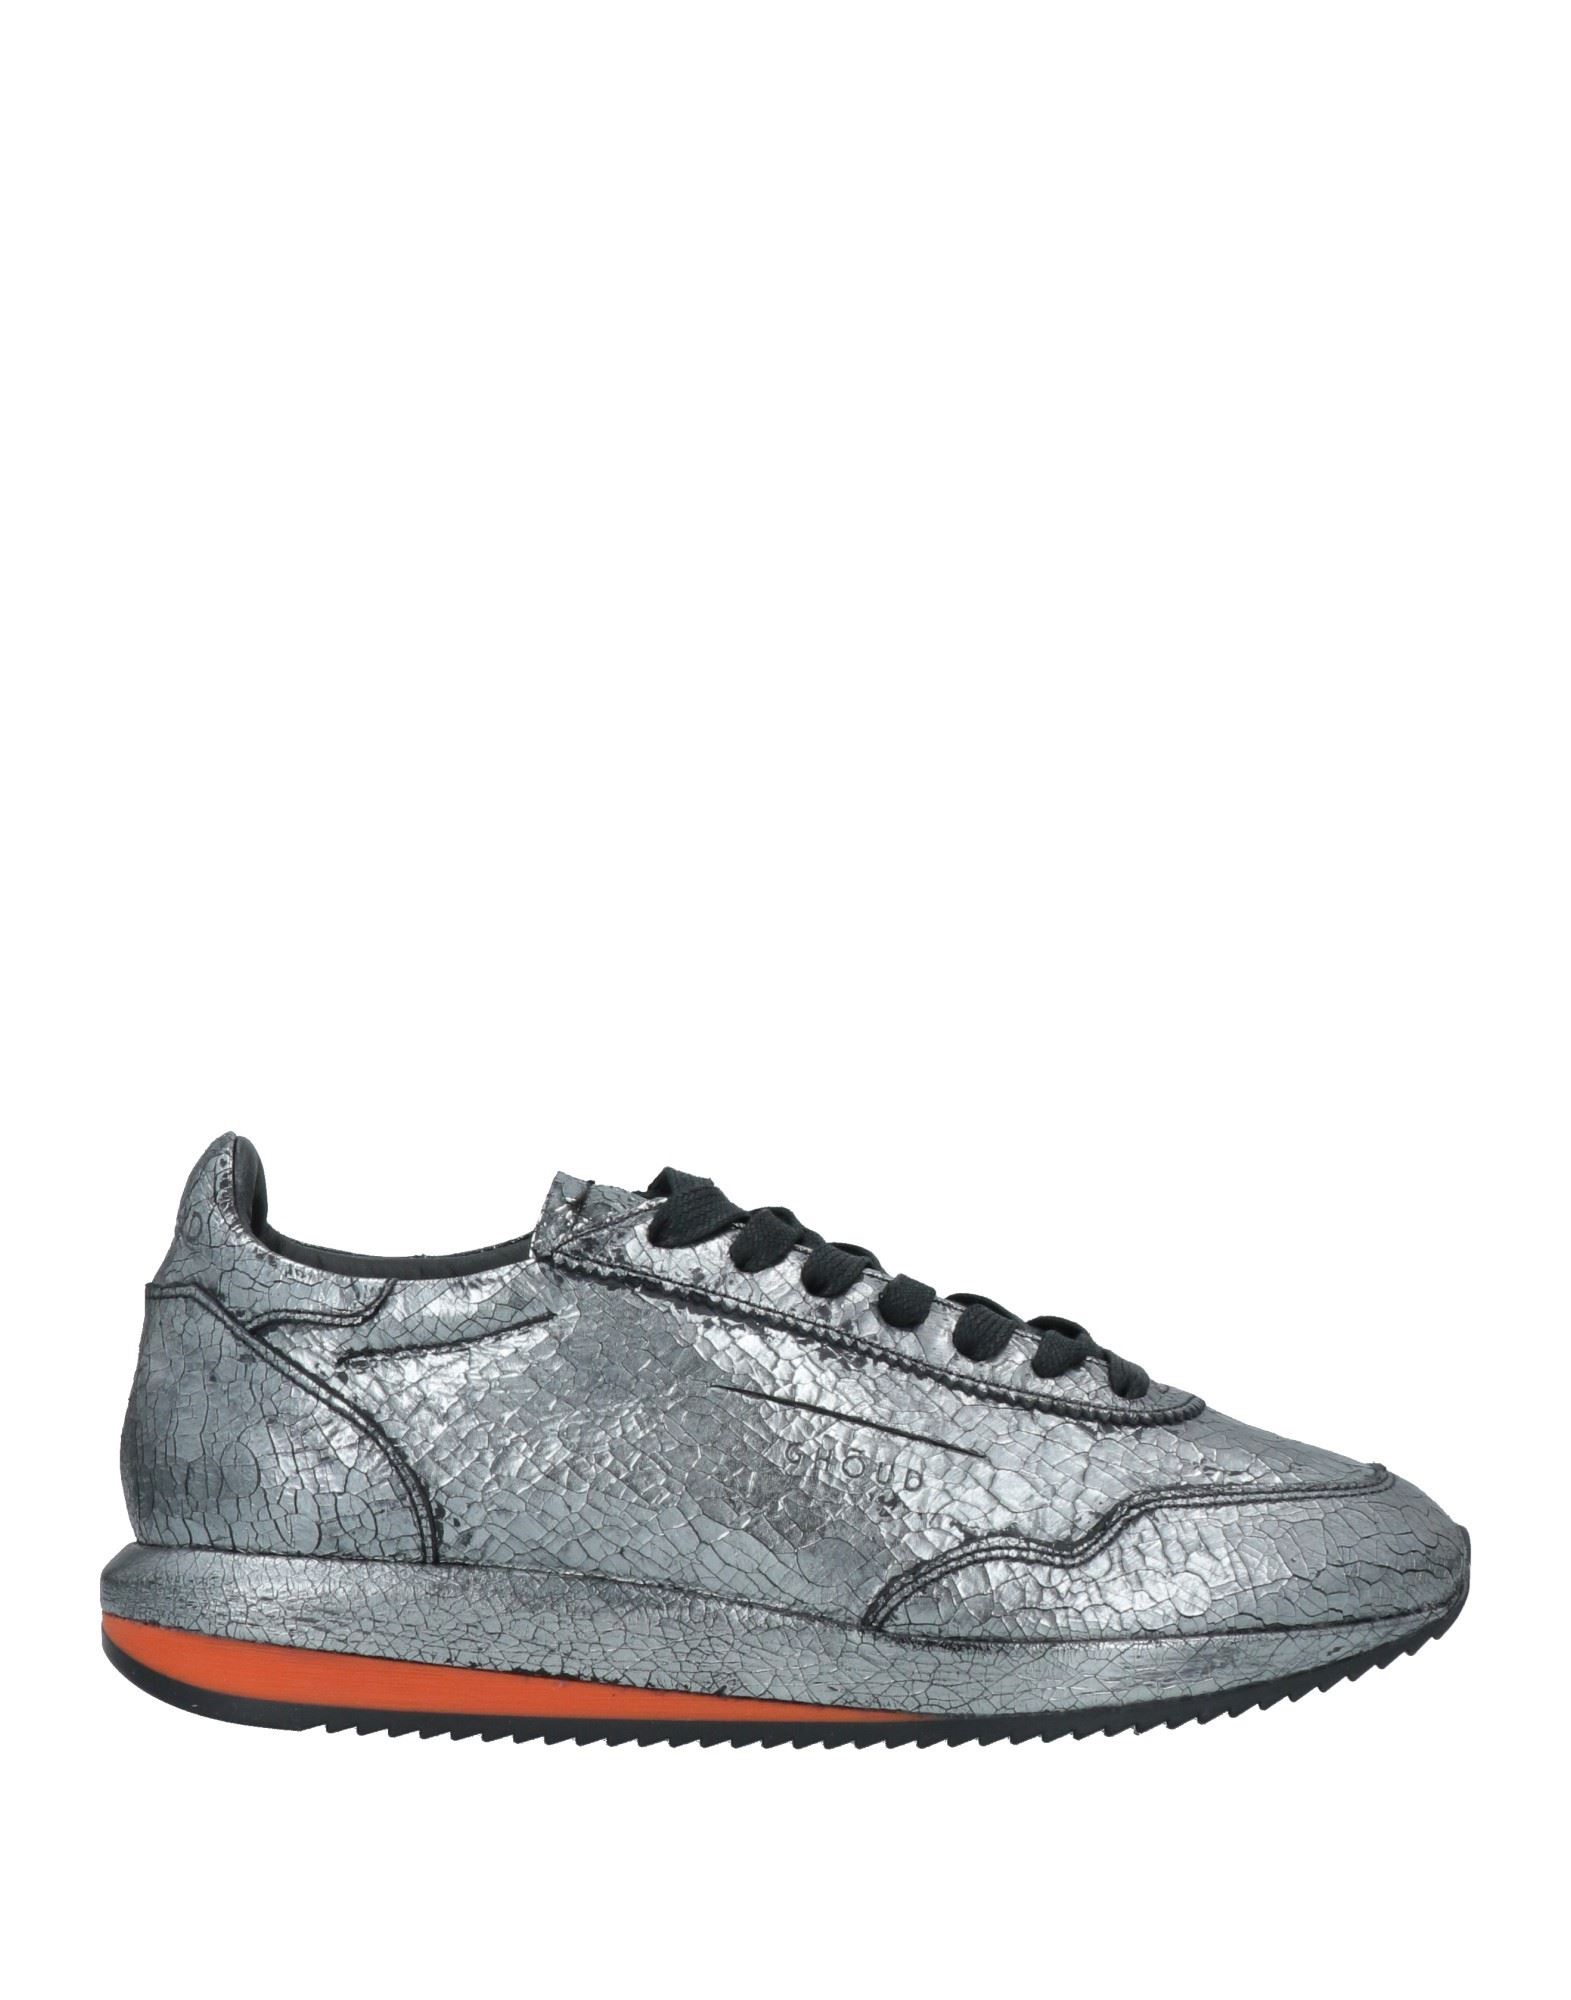 Ghoud Venice Sneakers In Grey